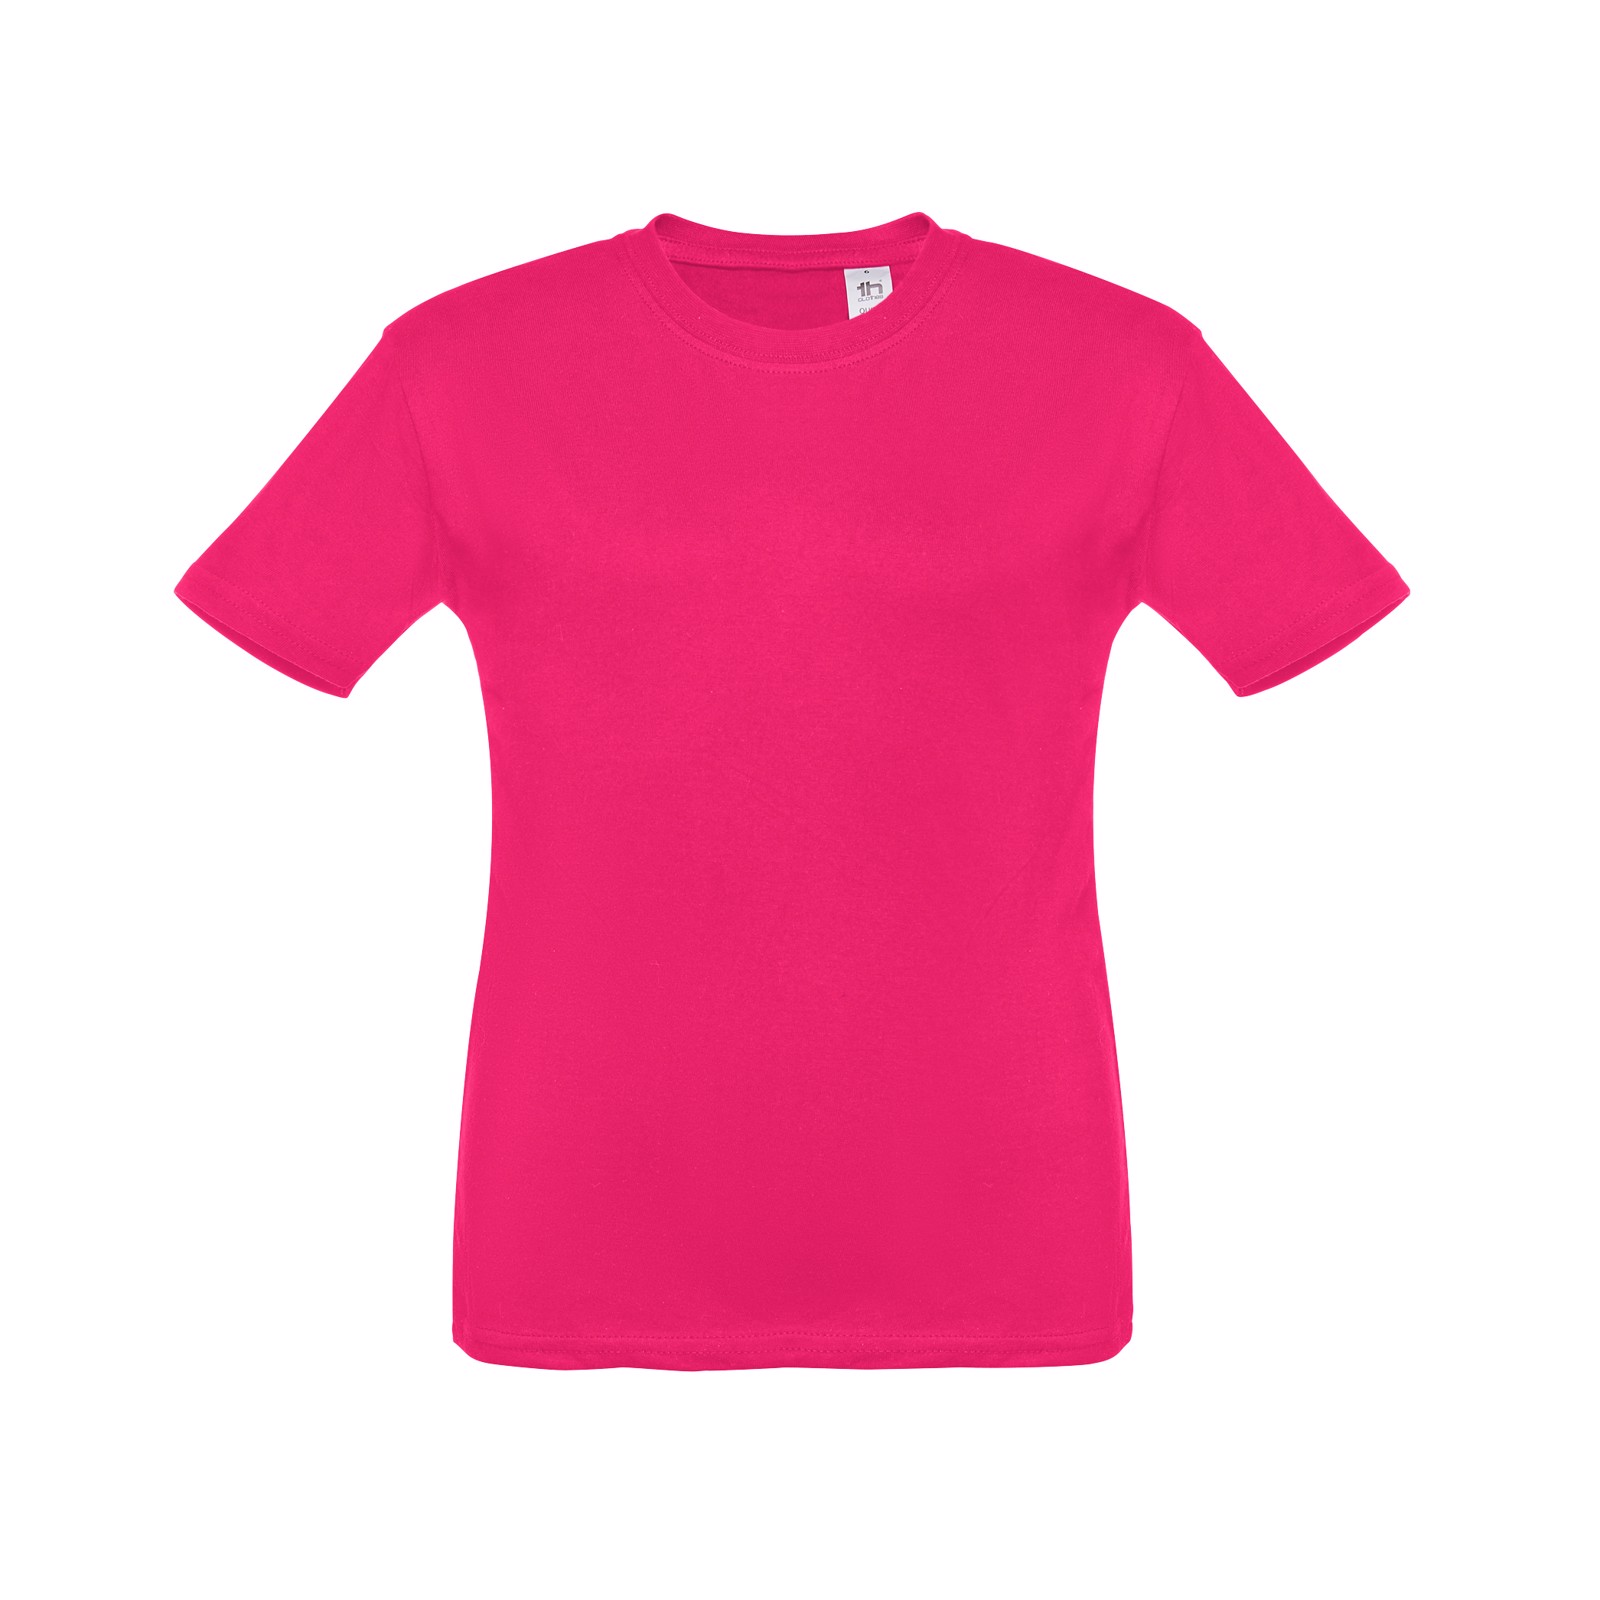 THC ANKARA KIDS. Children's t-shirt - Pink / 8